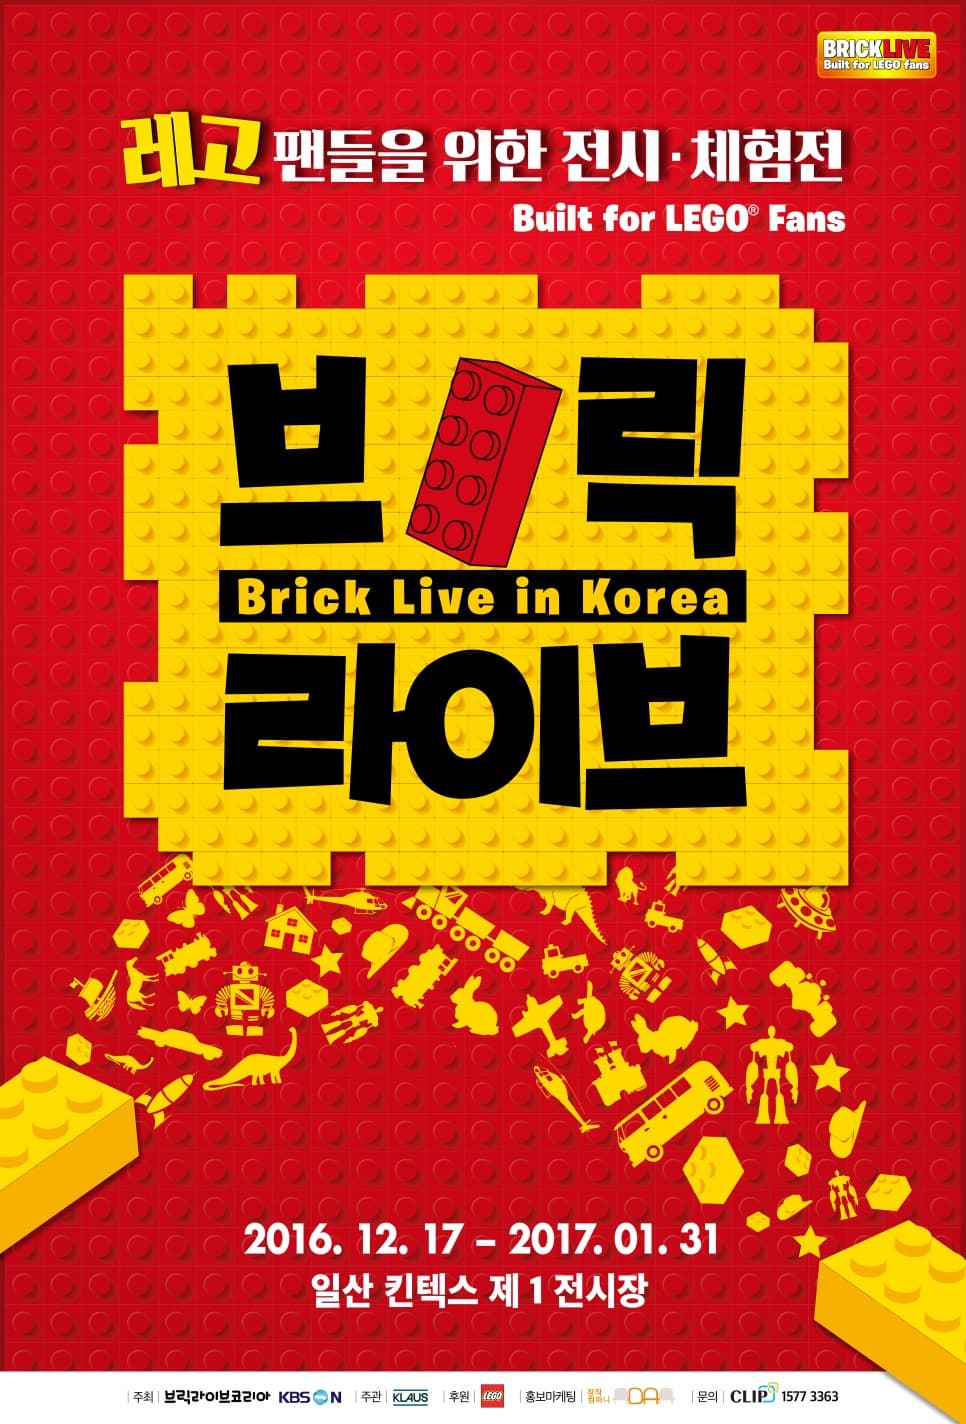 레고 팬들을 위한 전시 체험전 Built for LEGO Fans 브릭 Brick Live in Korea 라이브 2016.12.17 ~2017.01.31 일산 킨텍스 제 1전시장 주최 브릭라이브코리아 KBS N 주관 KLAUS 후원 레고 홍보마케팅 창작컴퍼니 문의 CLIP 1577-3363